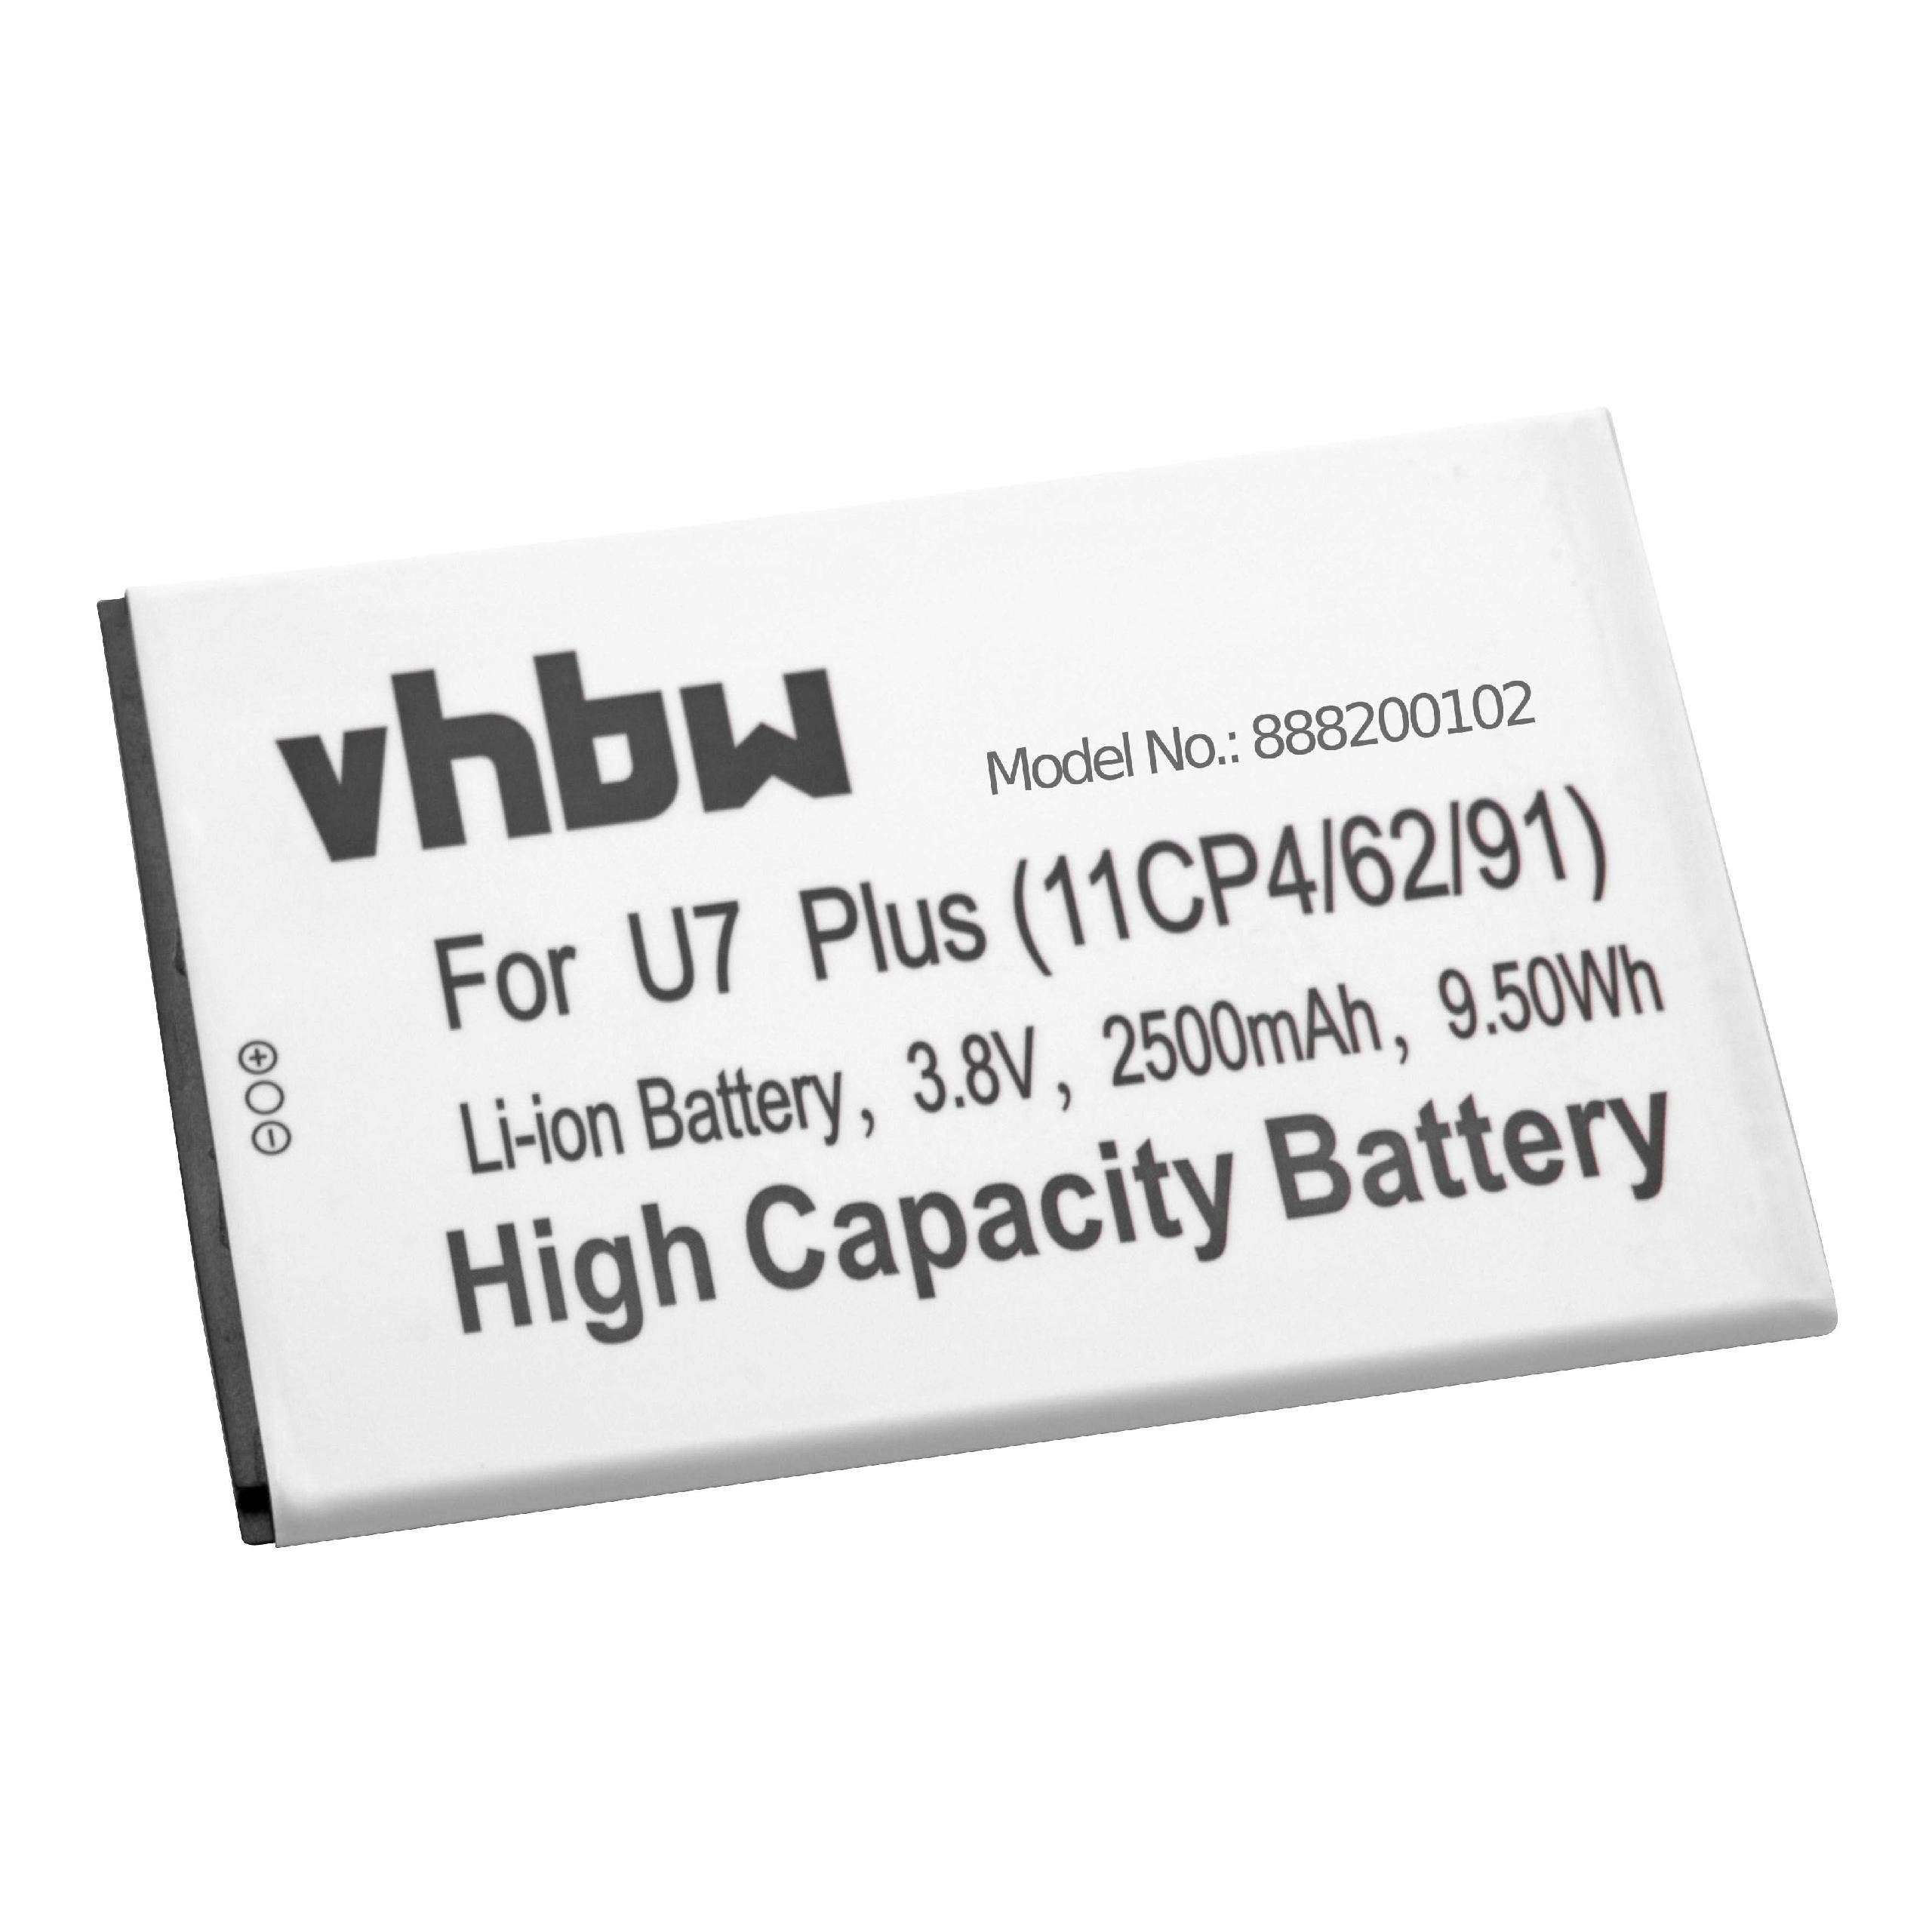 vhbw Plus mAh kompatibel 2500 mit Oukitel U7 V) Smartphone-Akku Li-Ion (3,8